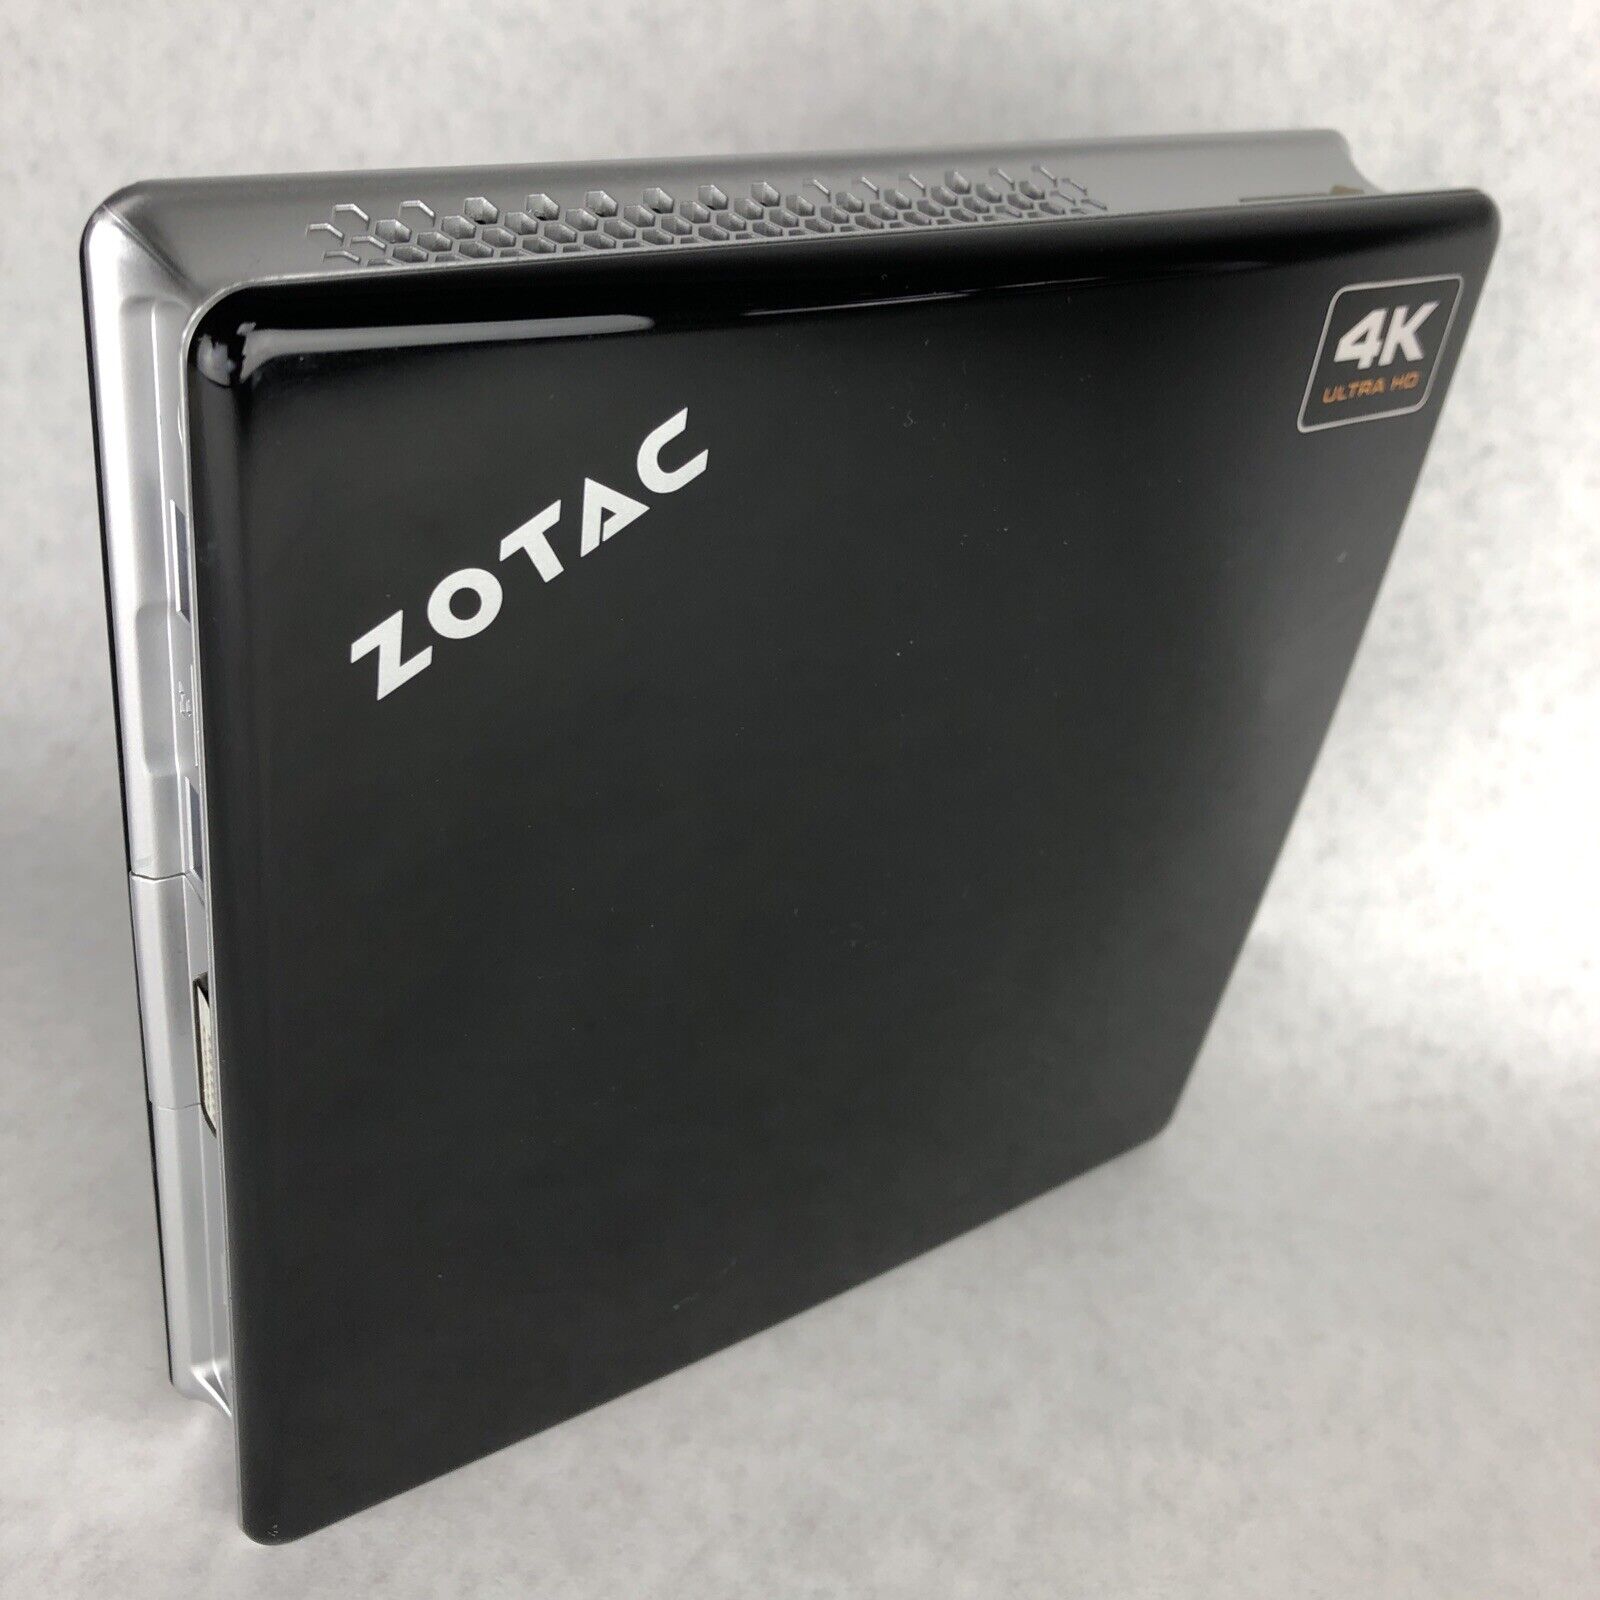 ZOTAC ZBOX M Series MI520-U Mini Intel i3-4010U 1.70GHz CPU 8GB RAM No HDD No OS